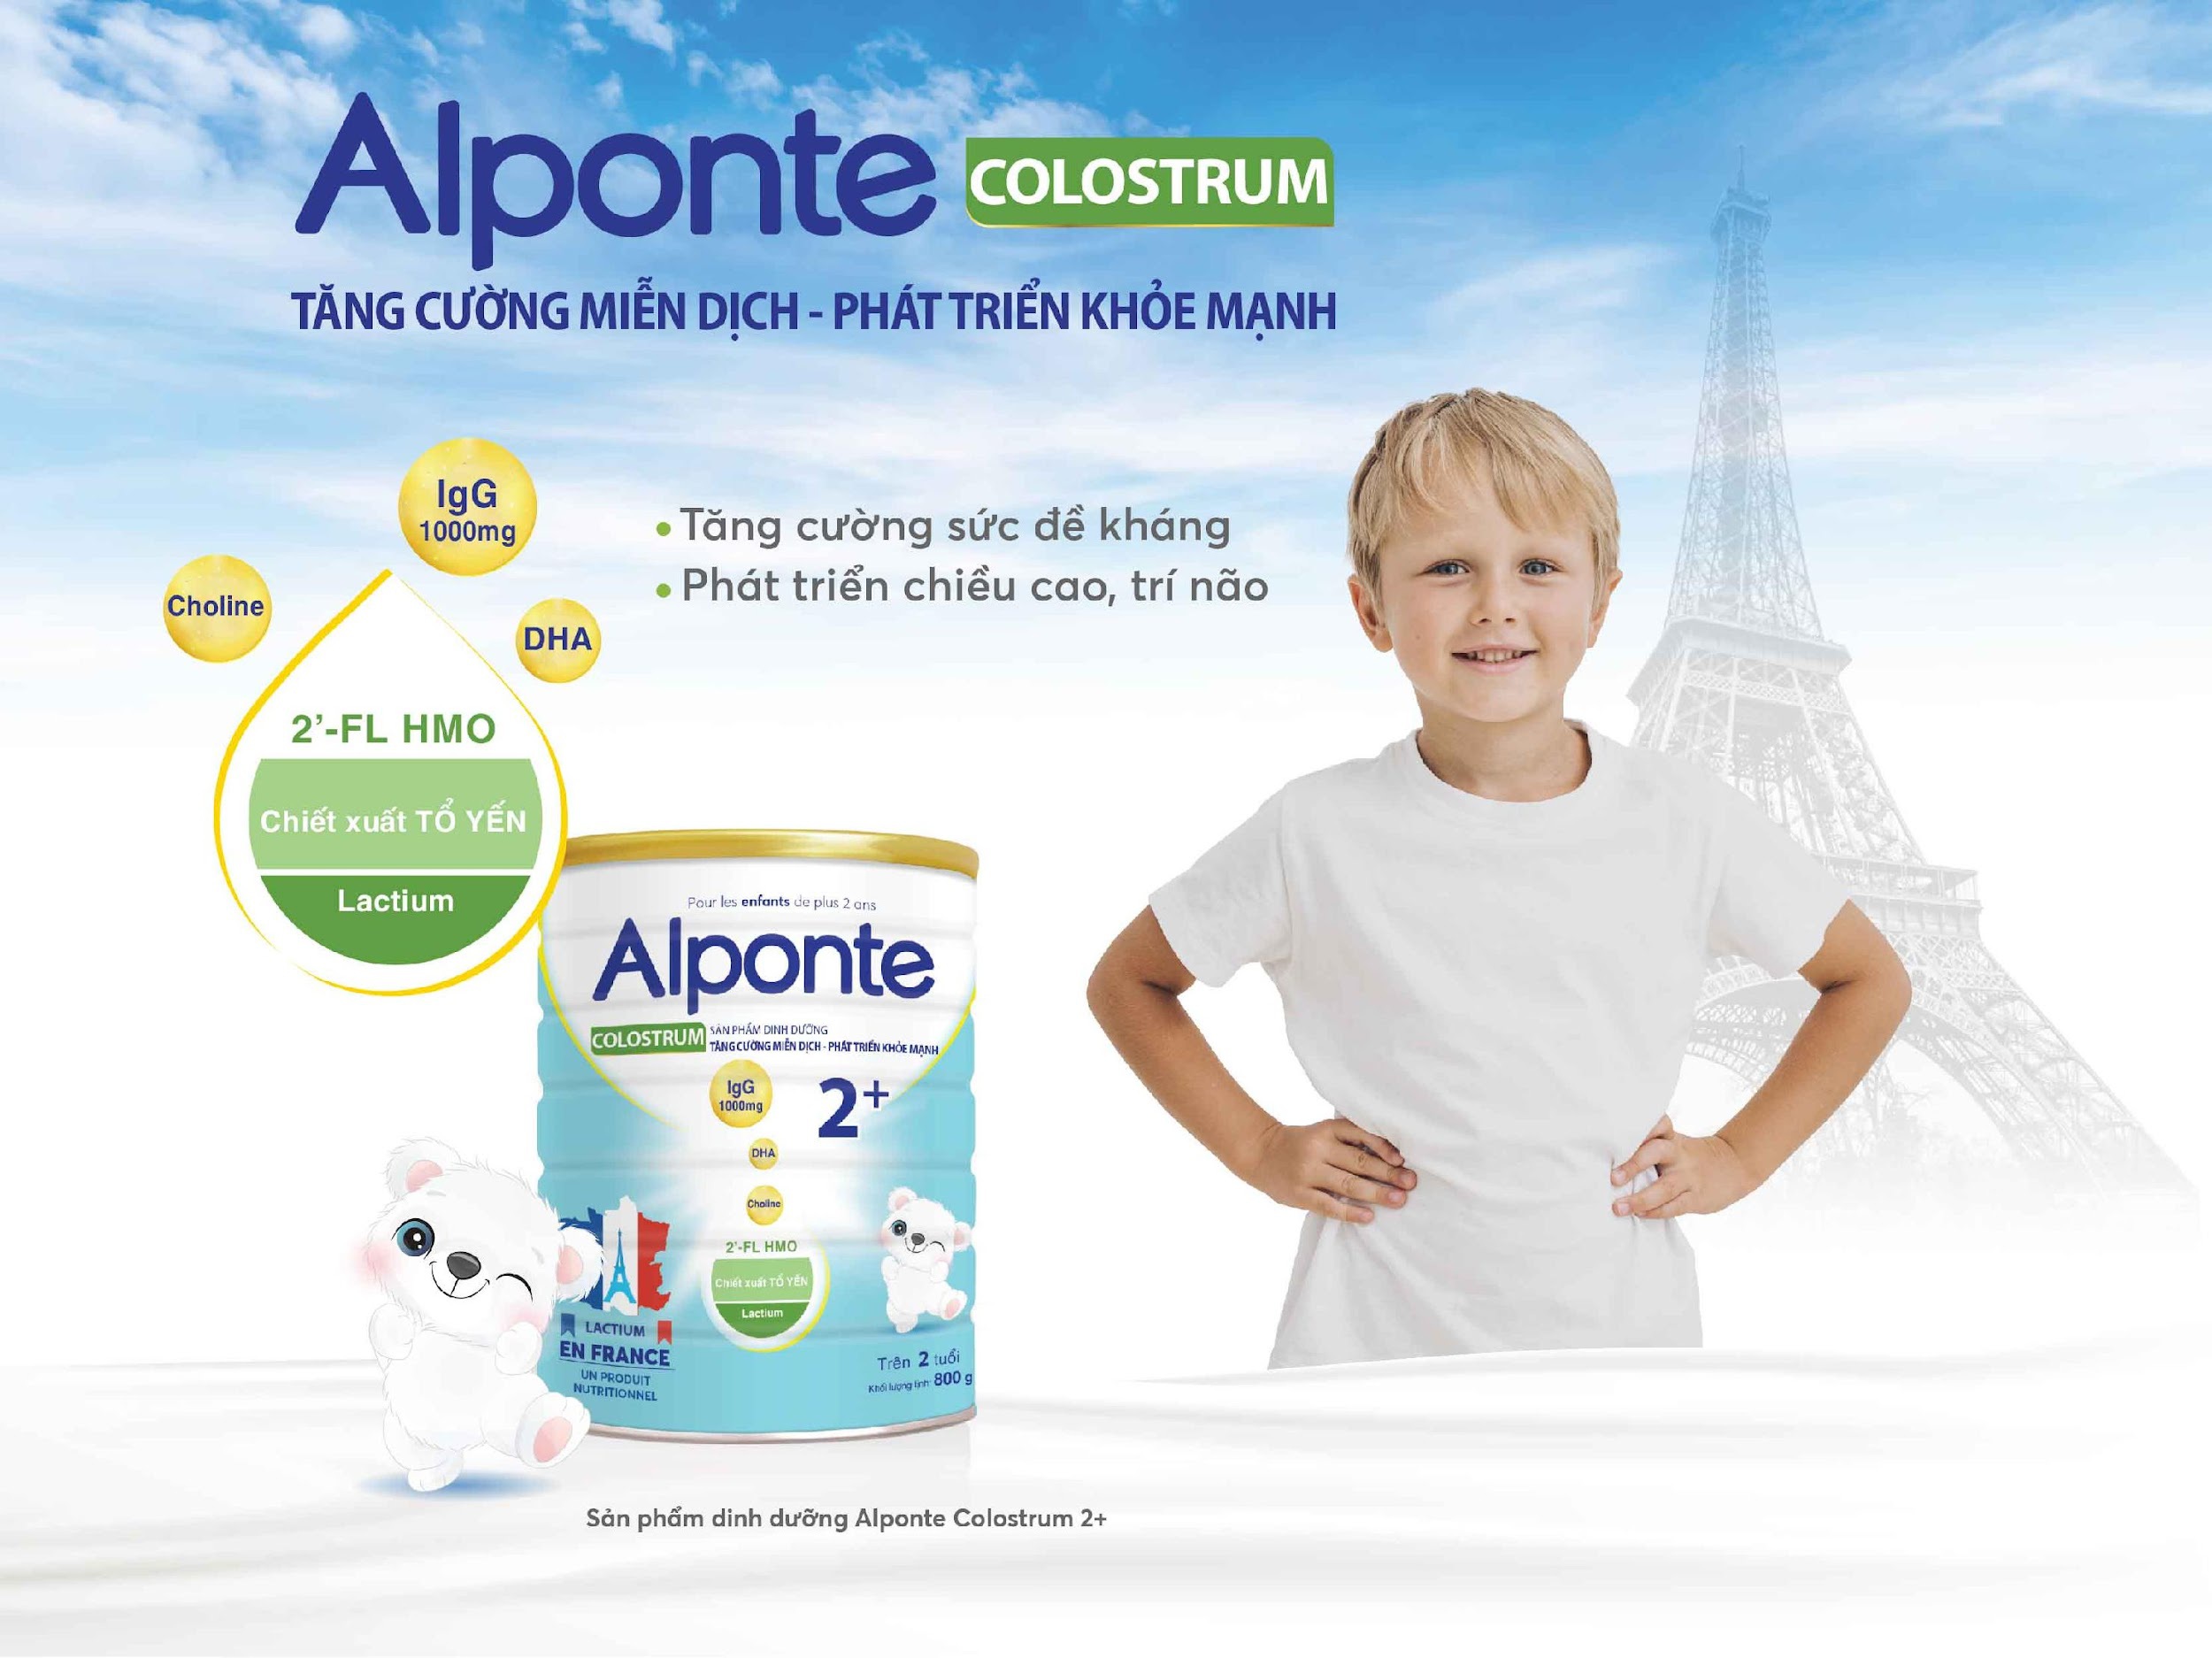 Alponte Colostrum 2+ - dinh dưỡng tuyệt hảo, vững bước đầu đời-2